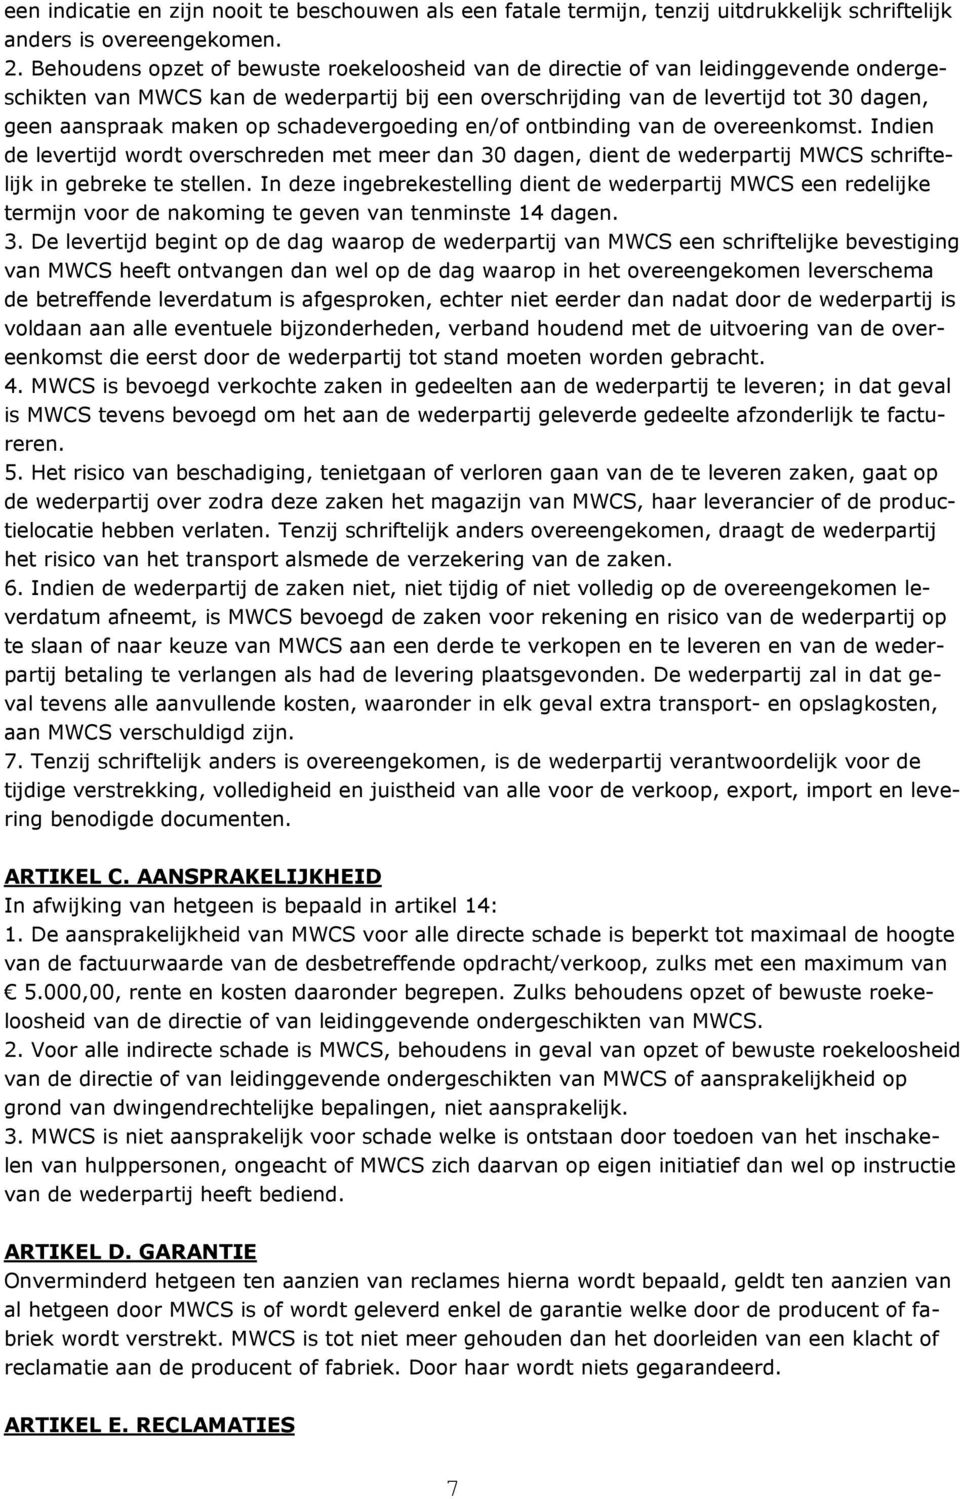 op schadevergoeding en/of ontbinding van de overeenkomst. Indien de levertijd wordt overschreden met meer dan 30 dagen, dient de wederpartij MWCS schriftelijk in gebreke te stellen.